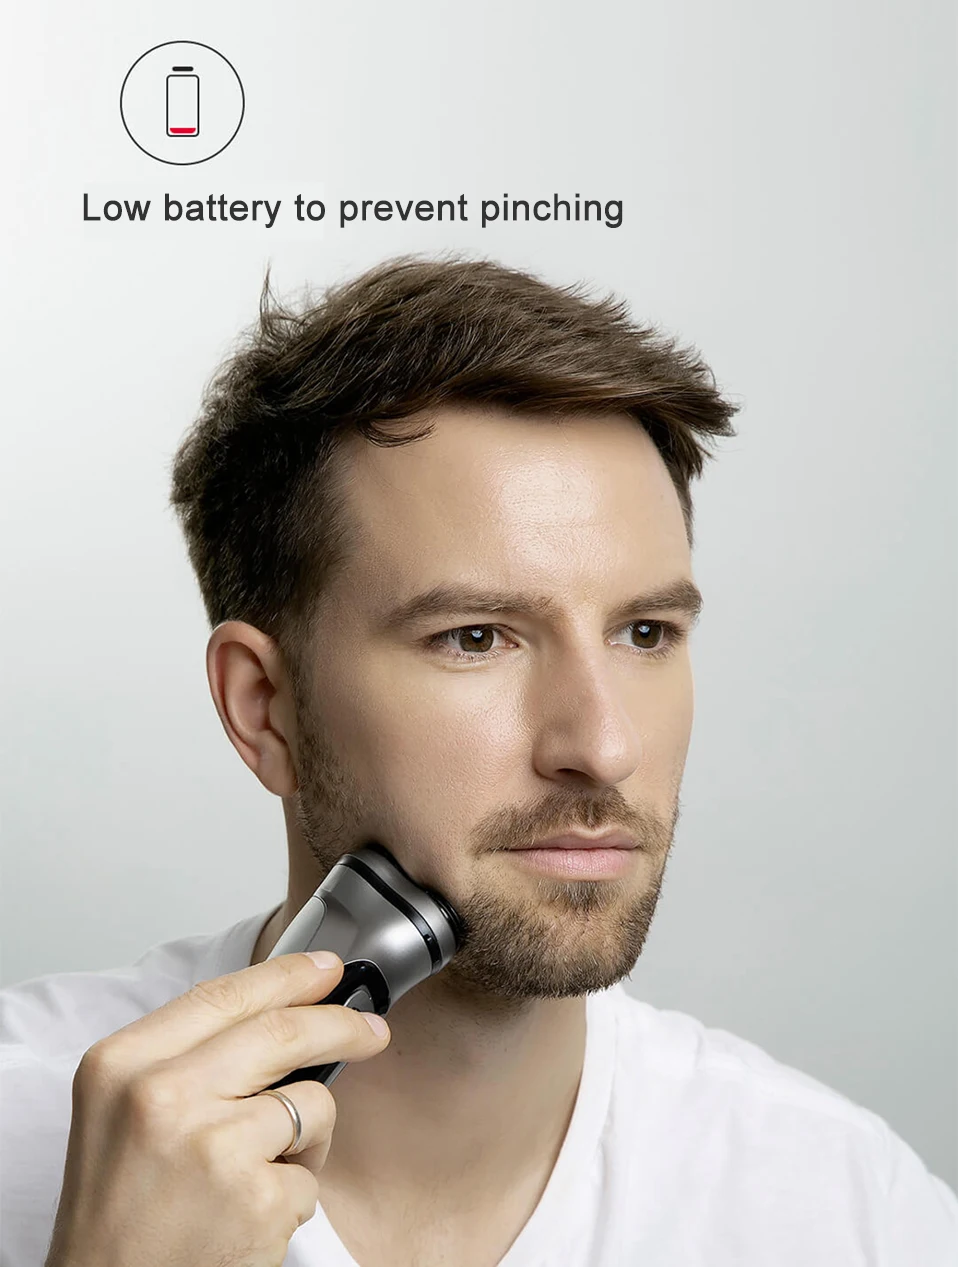 Xiaomi Enchen BlackStone 3D электробритва бритва Мужская моющаяся type-C Перезаряжаемый для бритья машинка для стрижки бороды